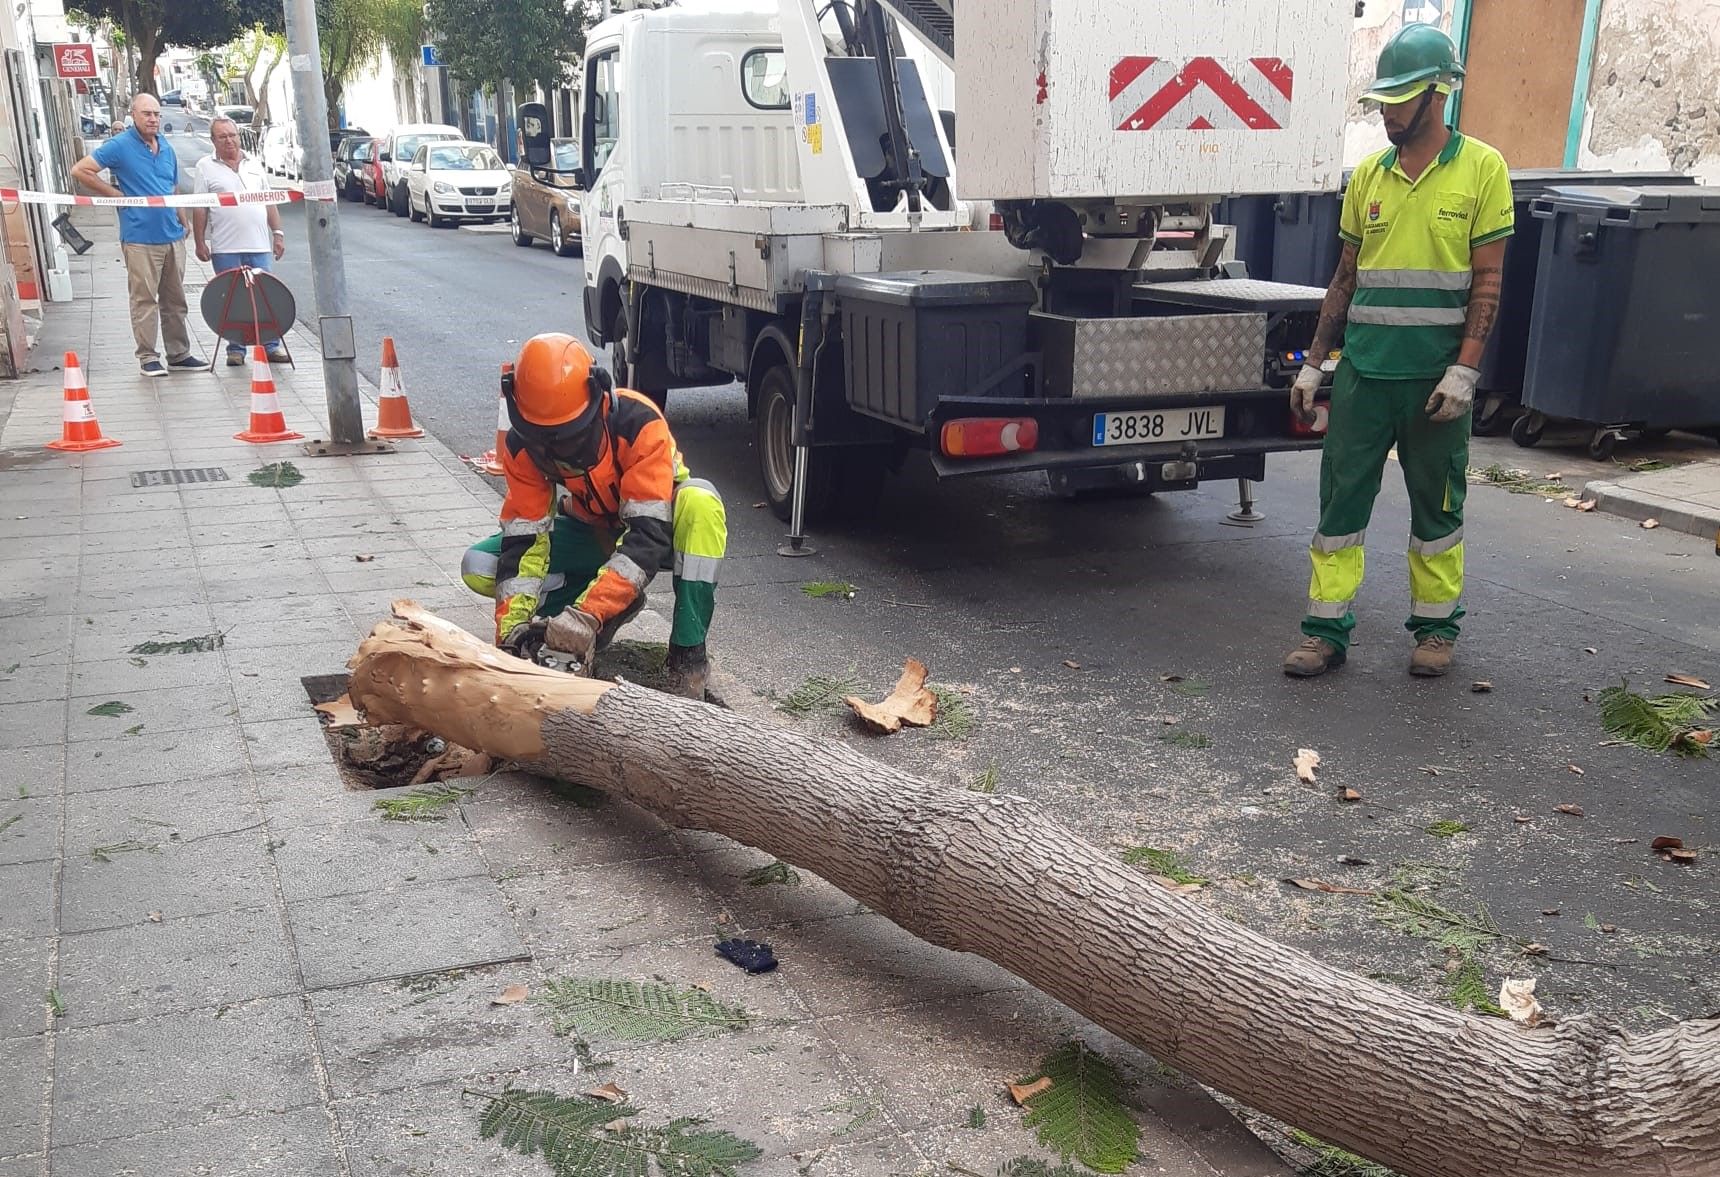 Talan un árbol tras el impacto de un camión en Arrecife